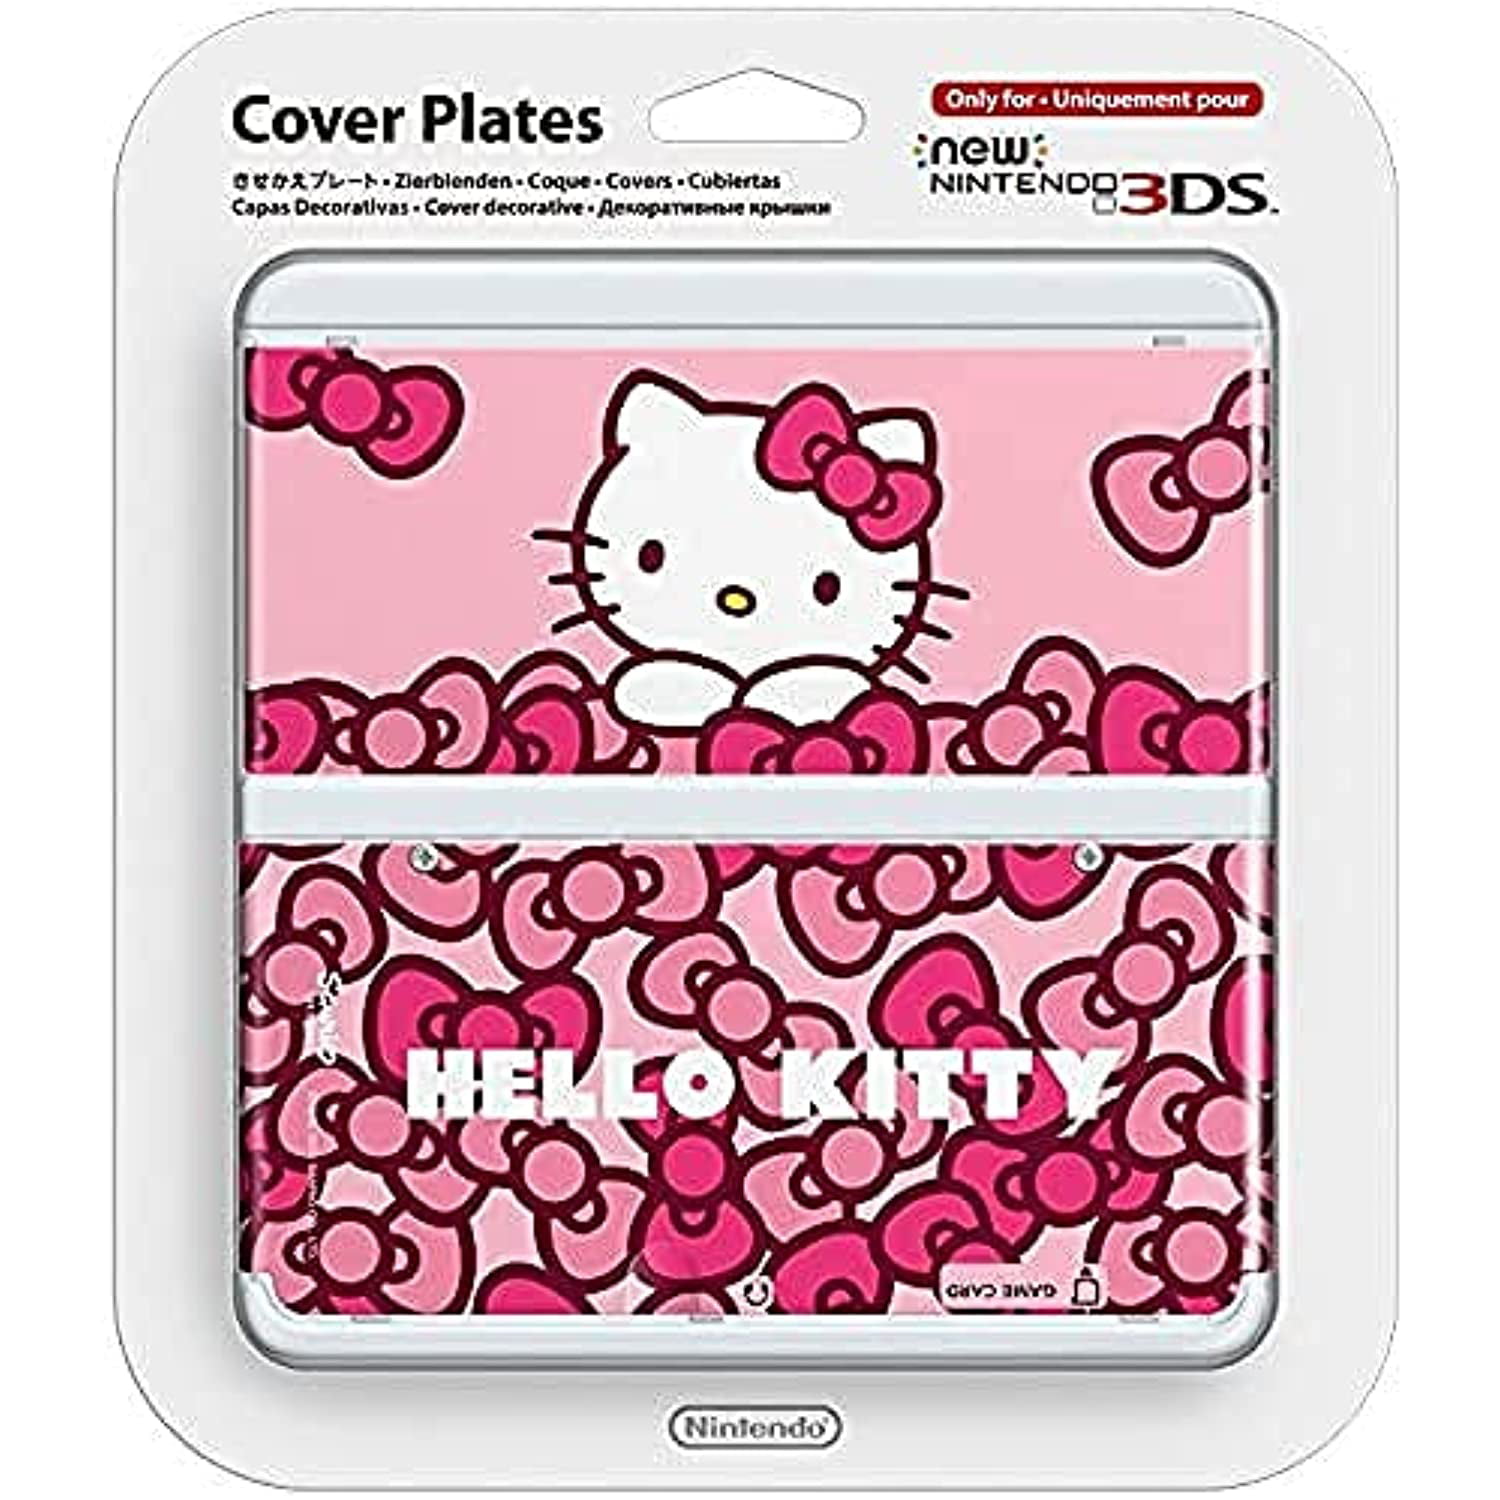 Begivenhed bringe handlingen I mængde Nintendo New 3Ds Cover Plate - Hello Kitty - Walmart.com